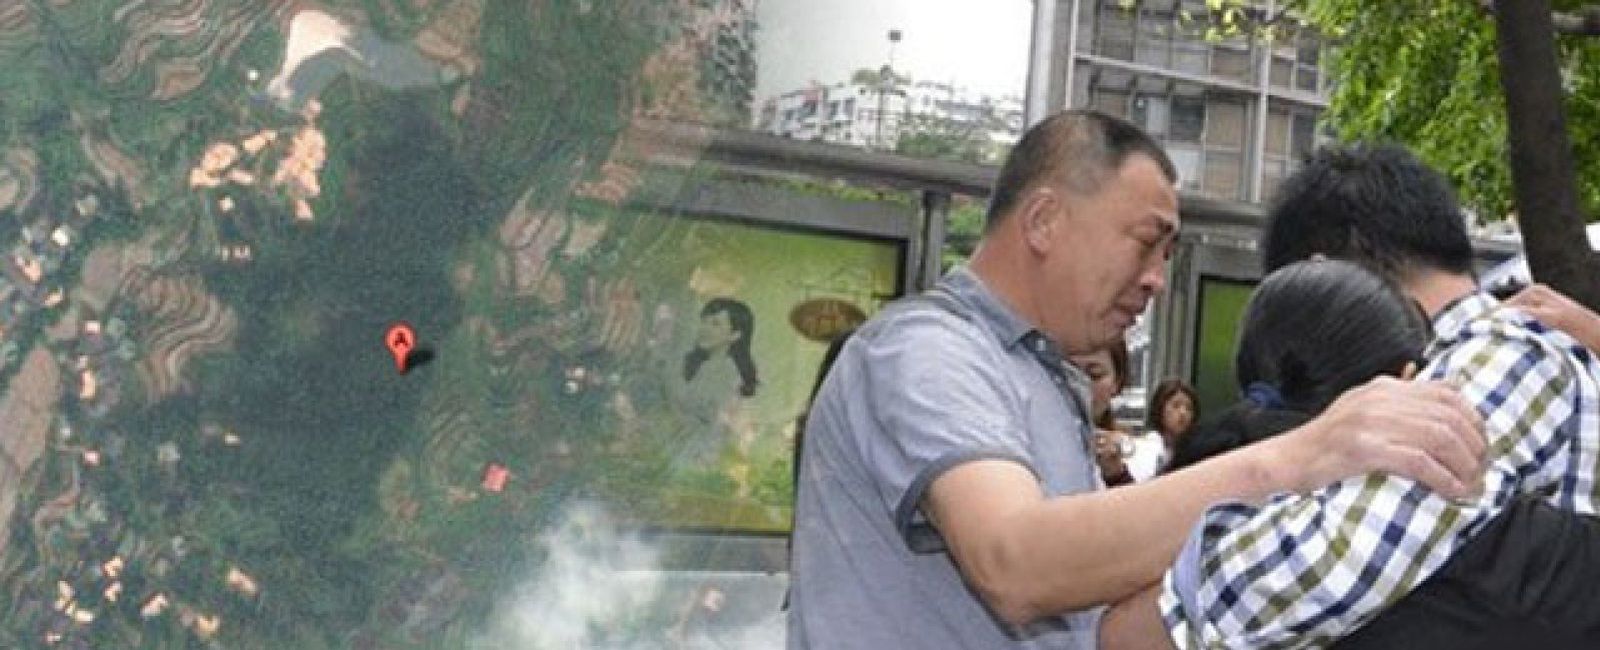 Foto: Un chino halla a su familia 23 años después de su secuestro, gracias a Google Maps